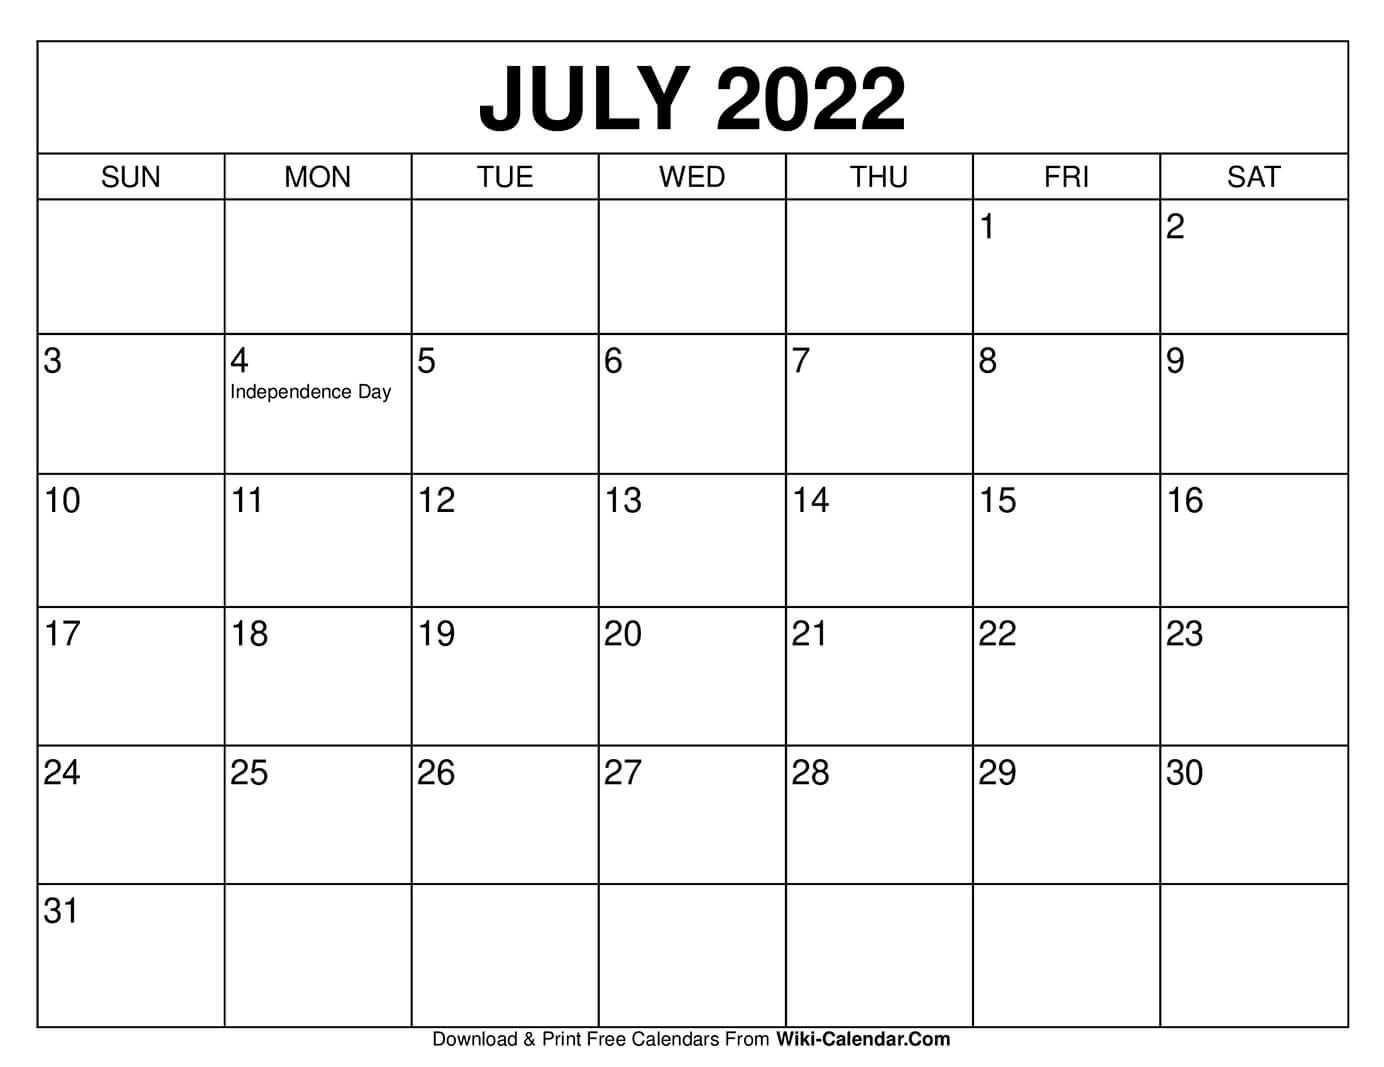 Get March 20 2022 Calendar